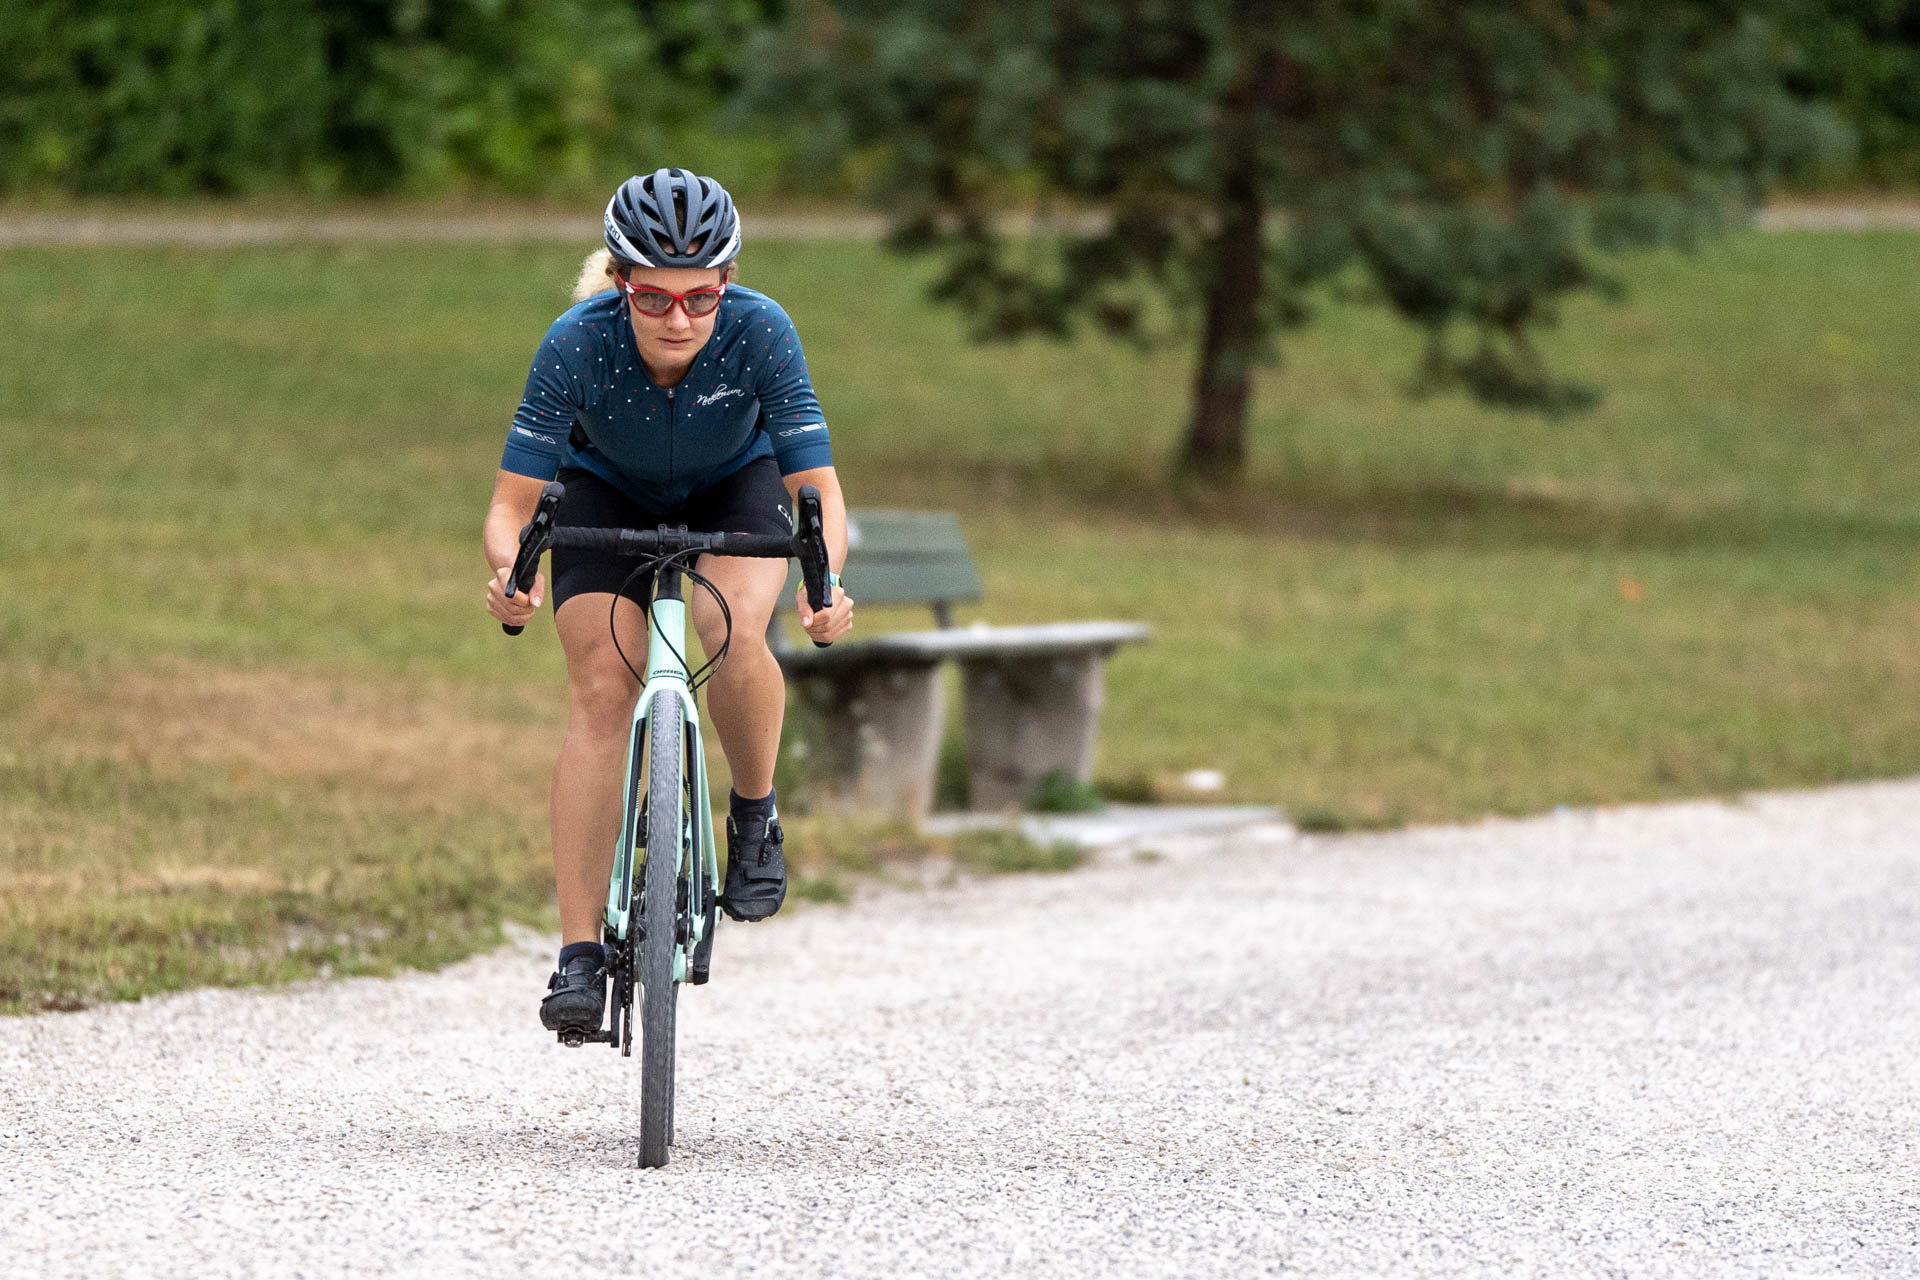 Eine Triathletin beim Fahrradfahren am Kuhsee in Augsburg - sie beweist, dass mit harter Arbeit und Ausdauer alles möglich ist, auch auf zwei Rädern.